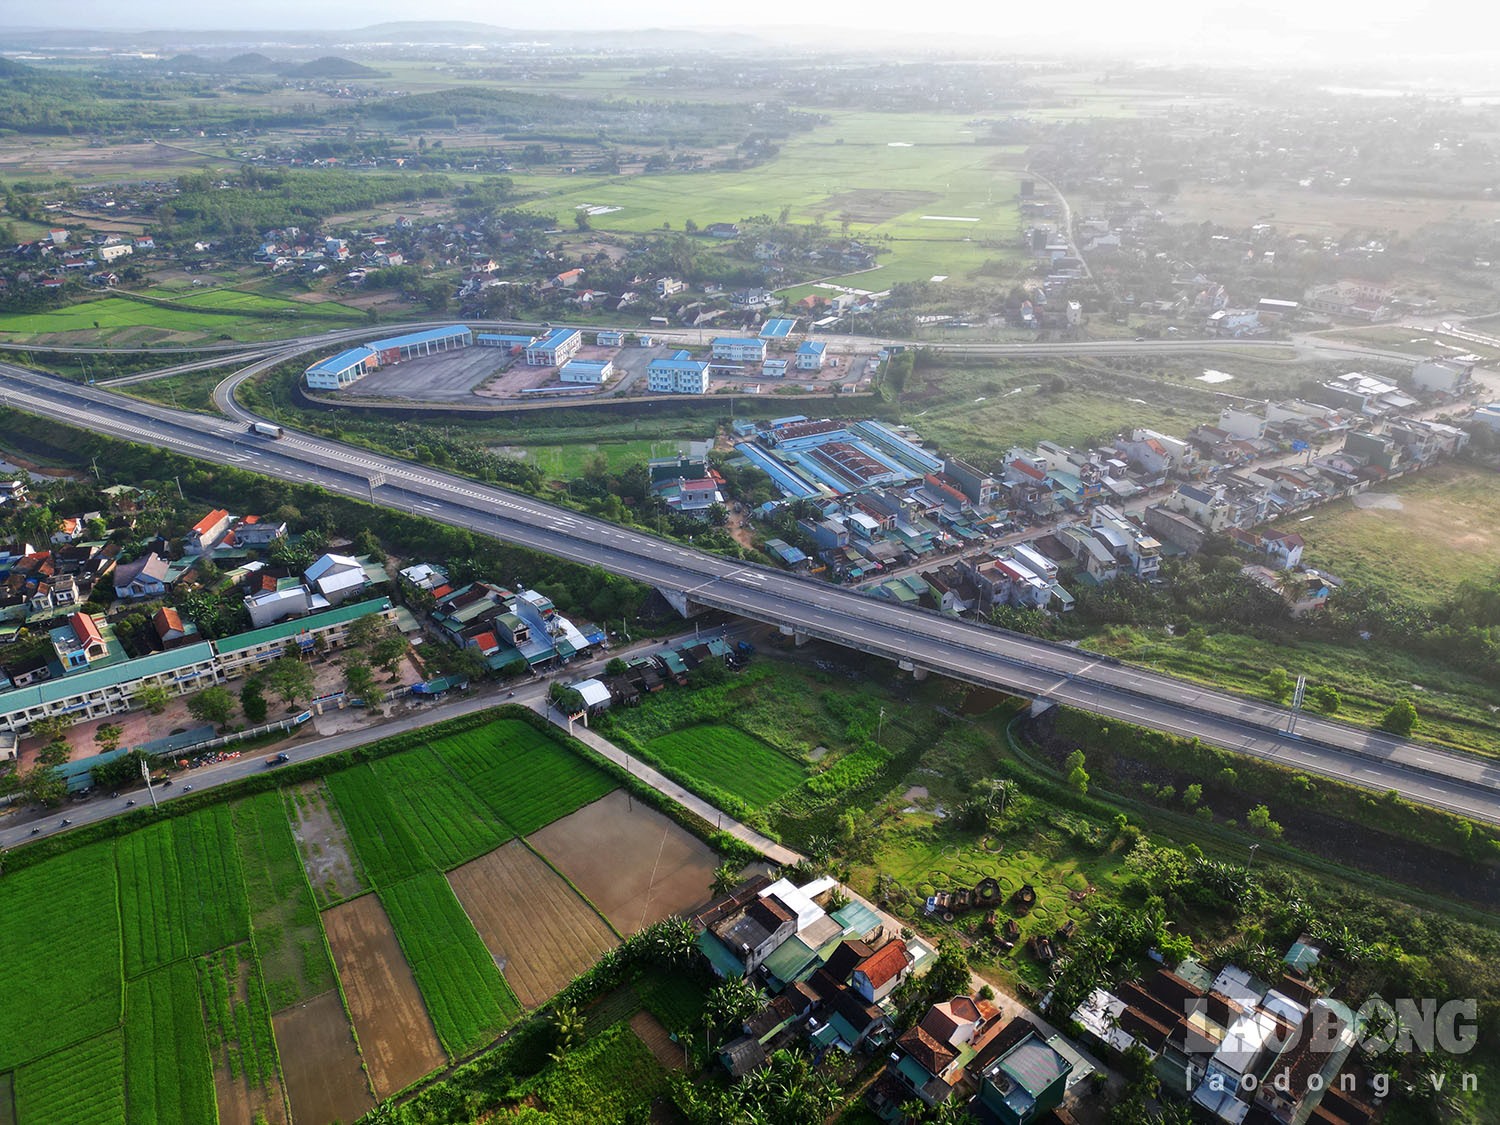 Từ khi cao tốc thông xe năm 2018 đến nay, đoạn đường từ TP Quảng Ngãi đến xã Tịnh Hà (Sơn Tịnh) phải “gánh” thêm lượng lớn ôtô nên thường xuyên xảy ra ùn tắc. Ảnh: Ngọc Viên